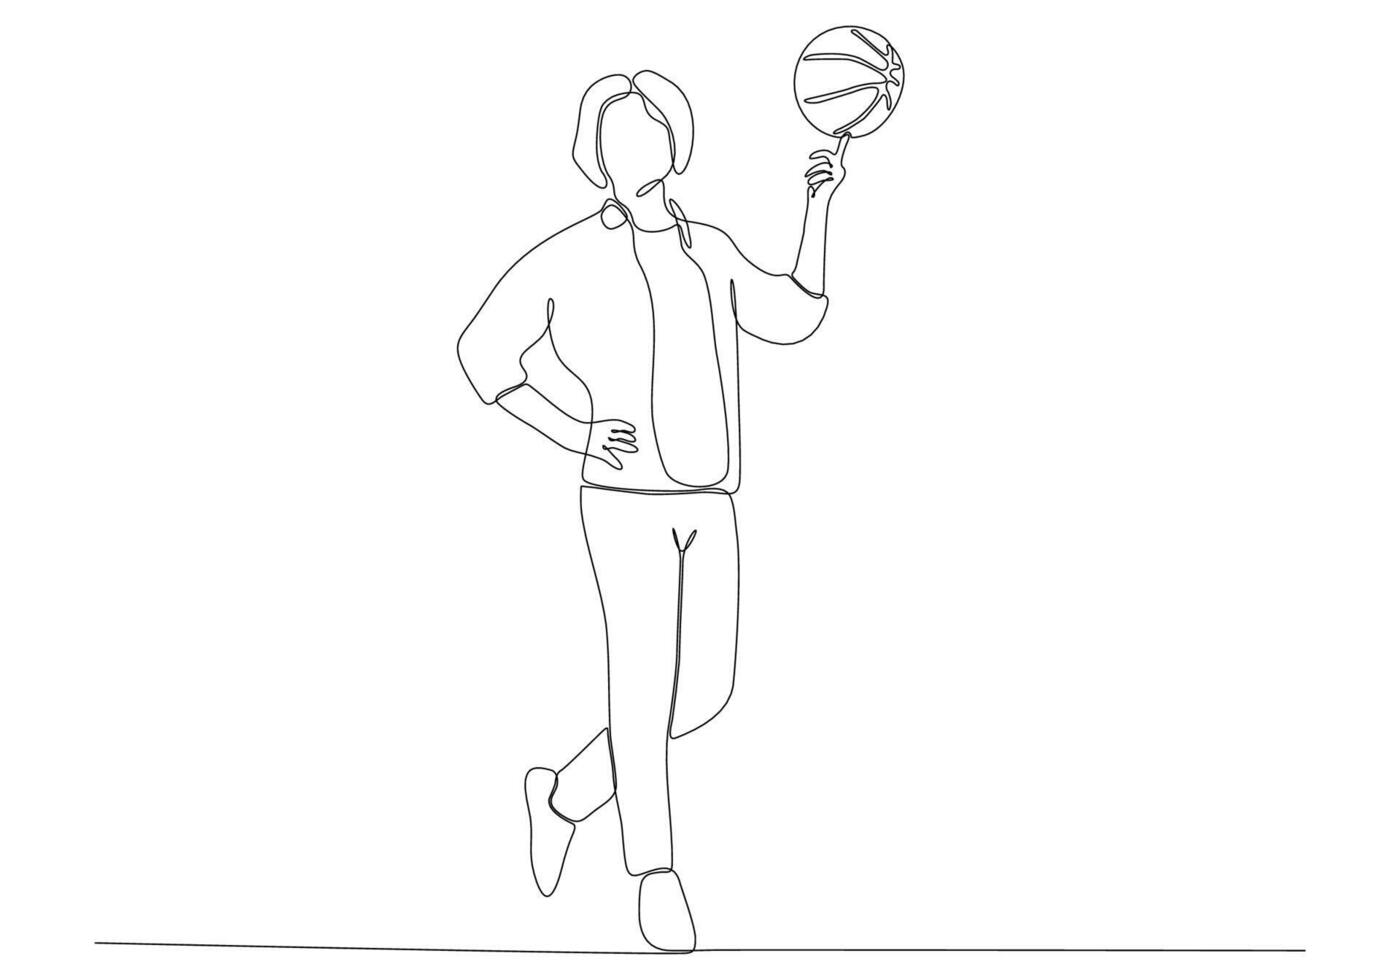 arte de linha contínua de homem jogando basquete vetor